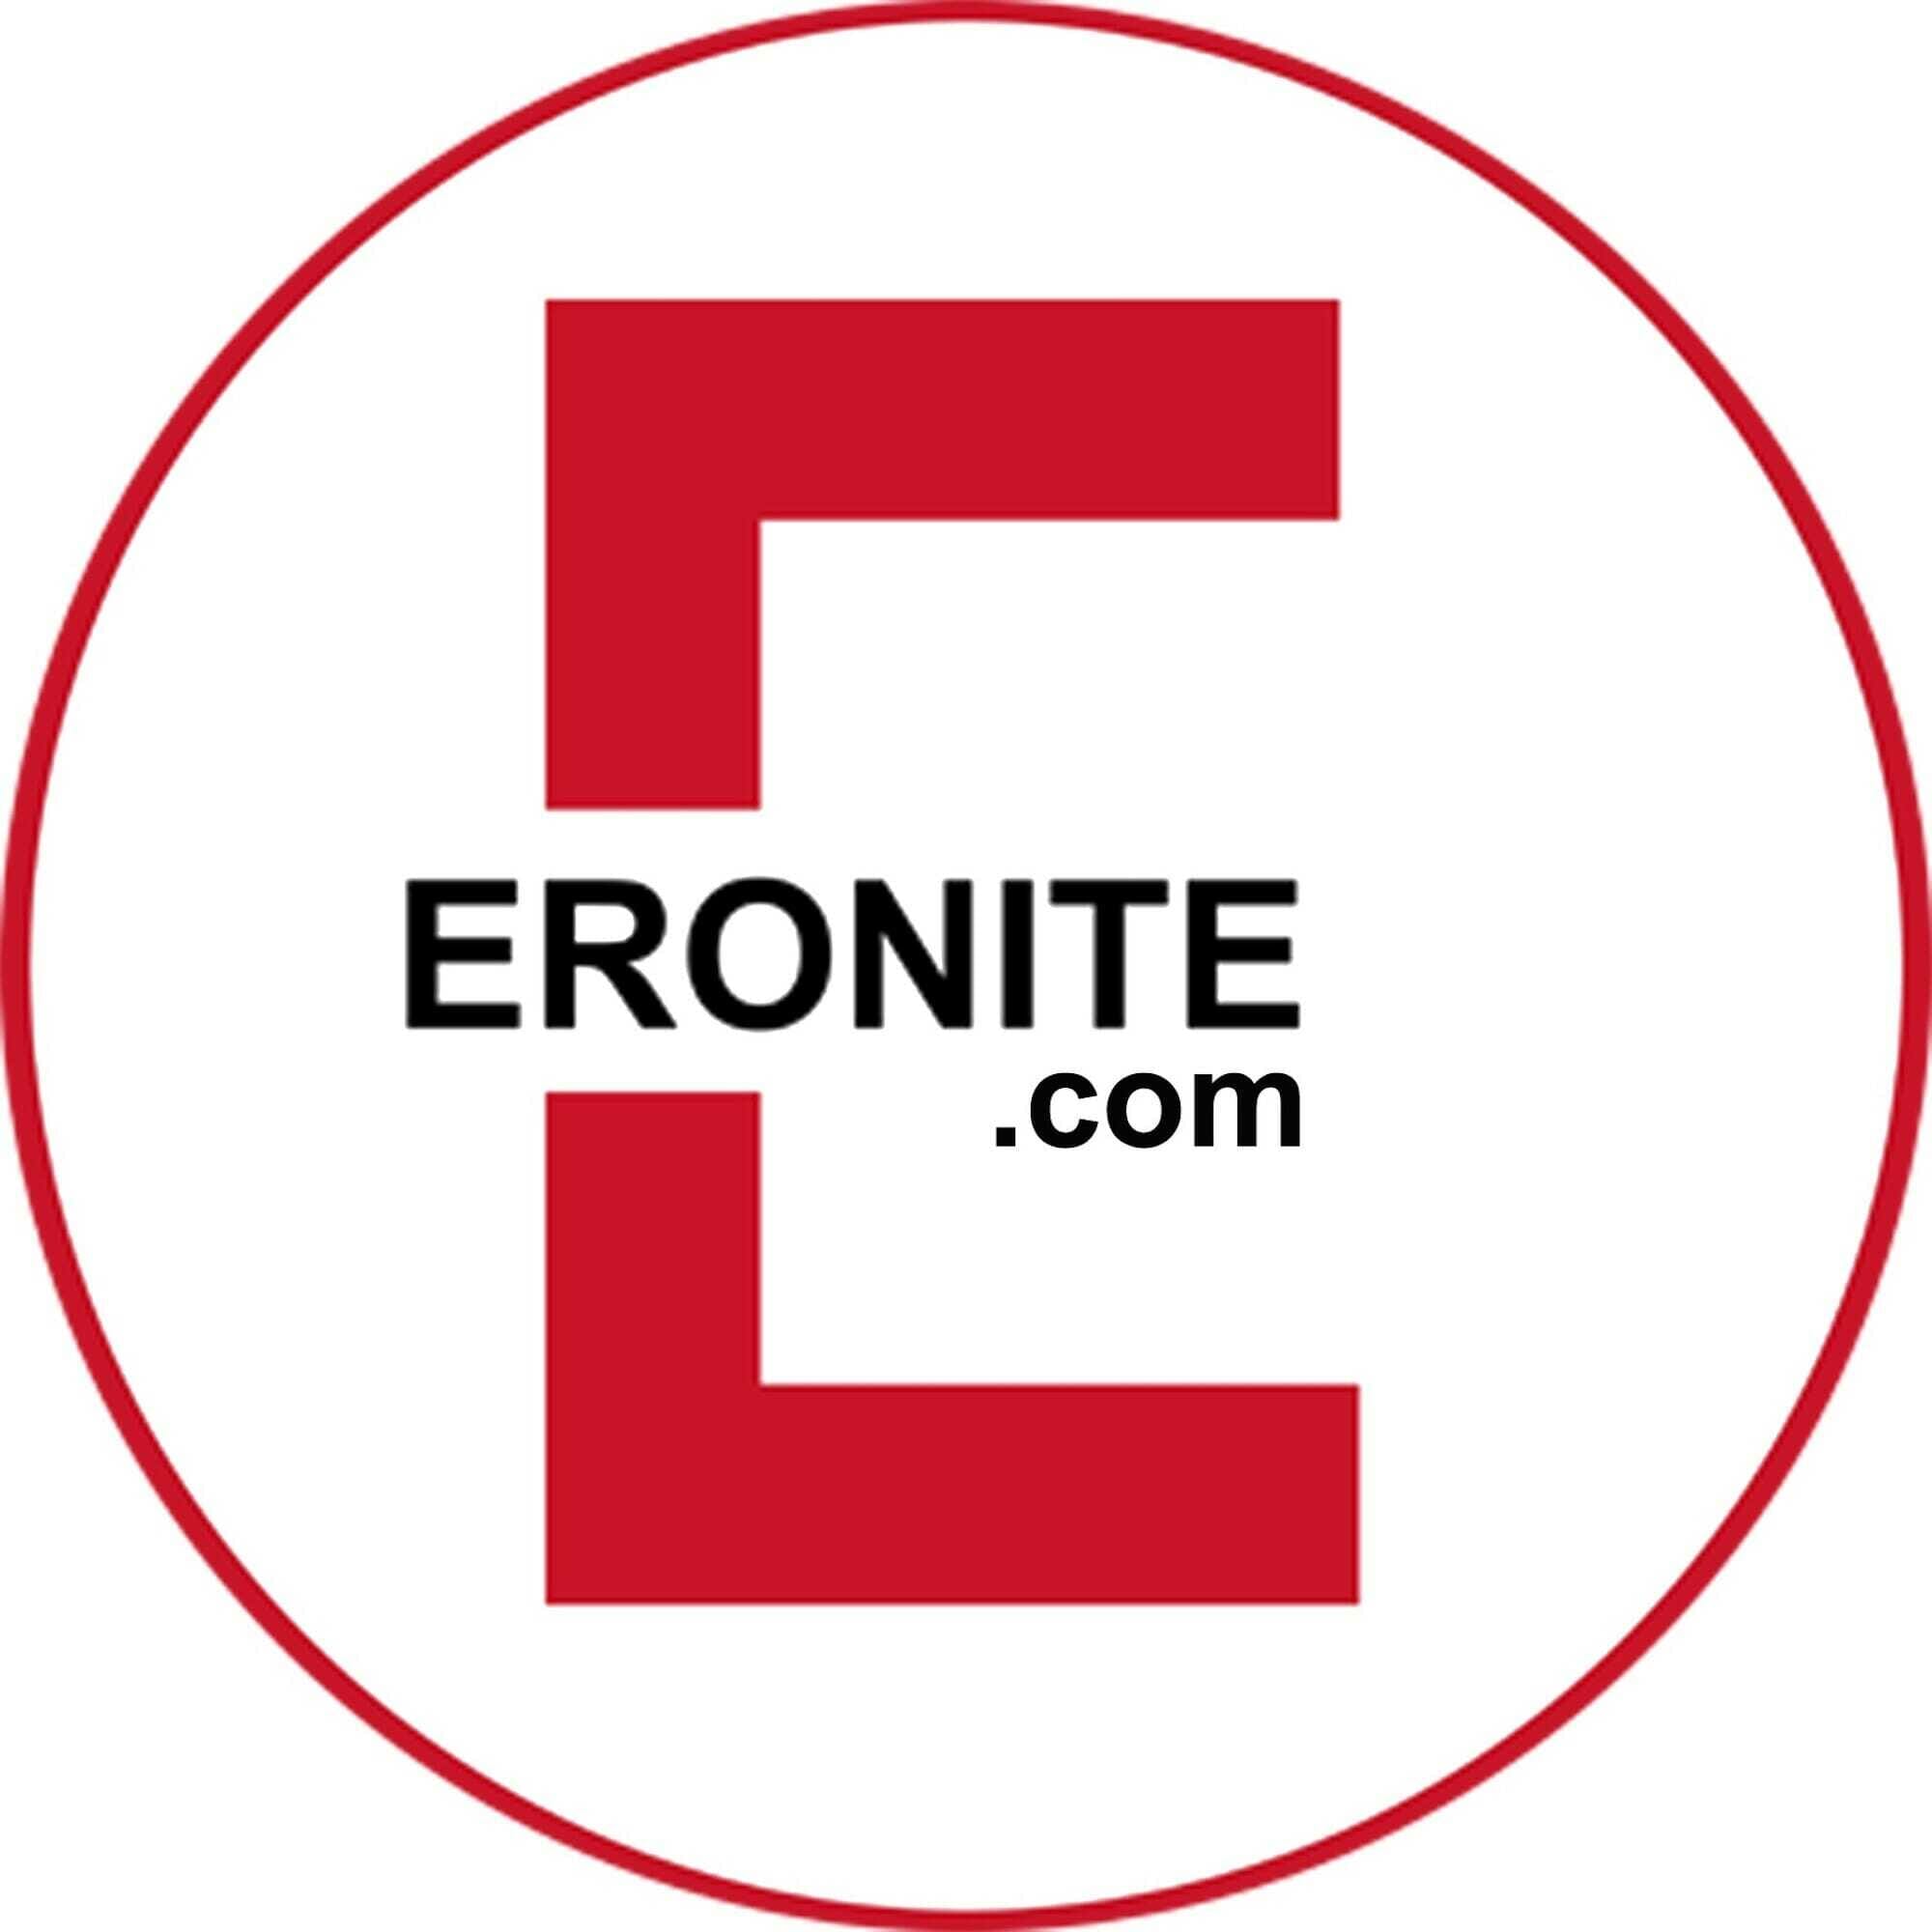 Eronite wird persönlicher Wir stellen unsere Redakteure vor Erotikblog Foto